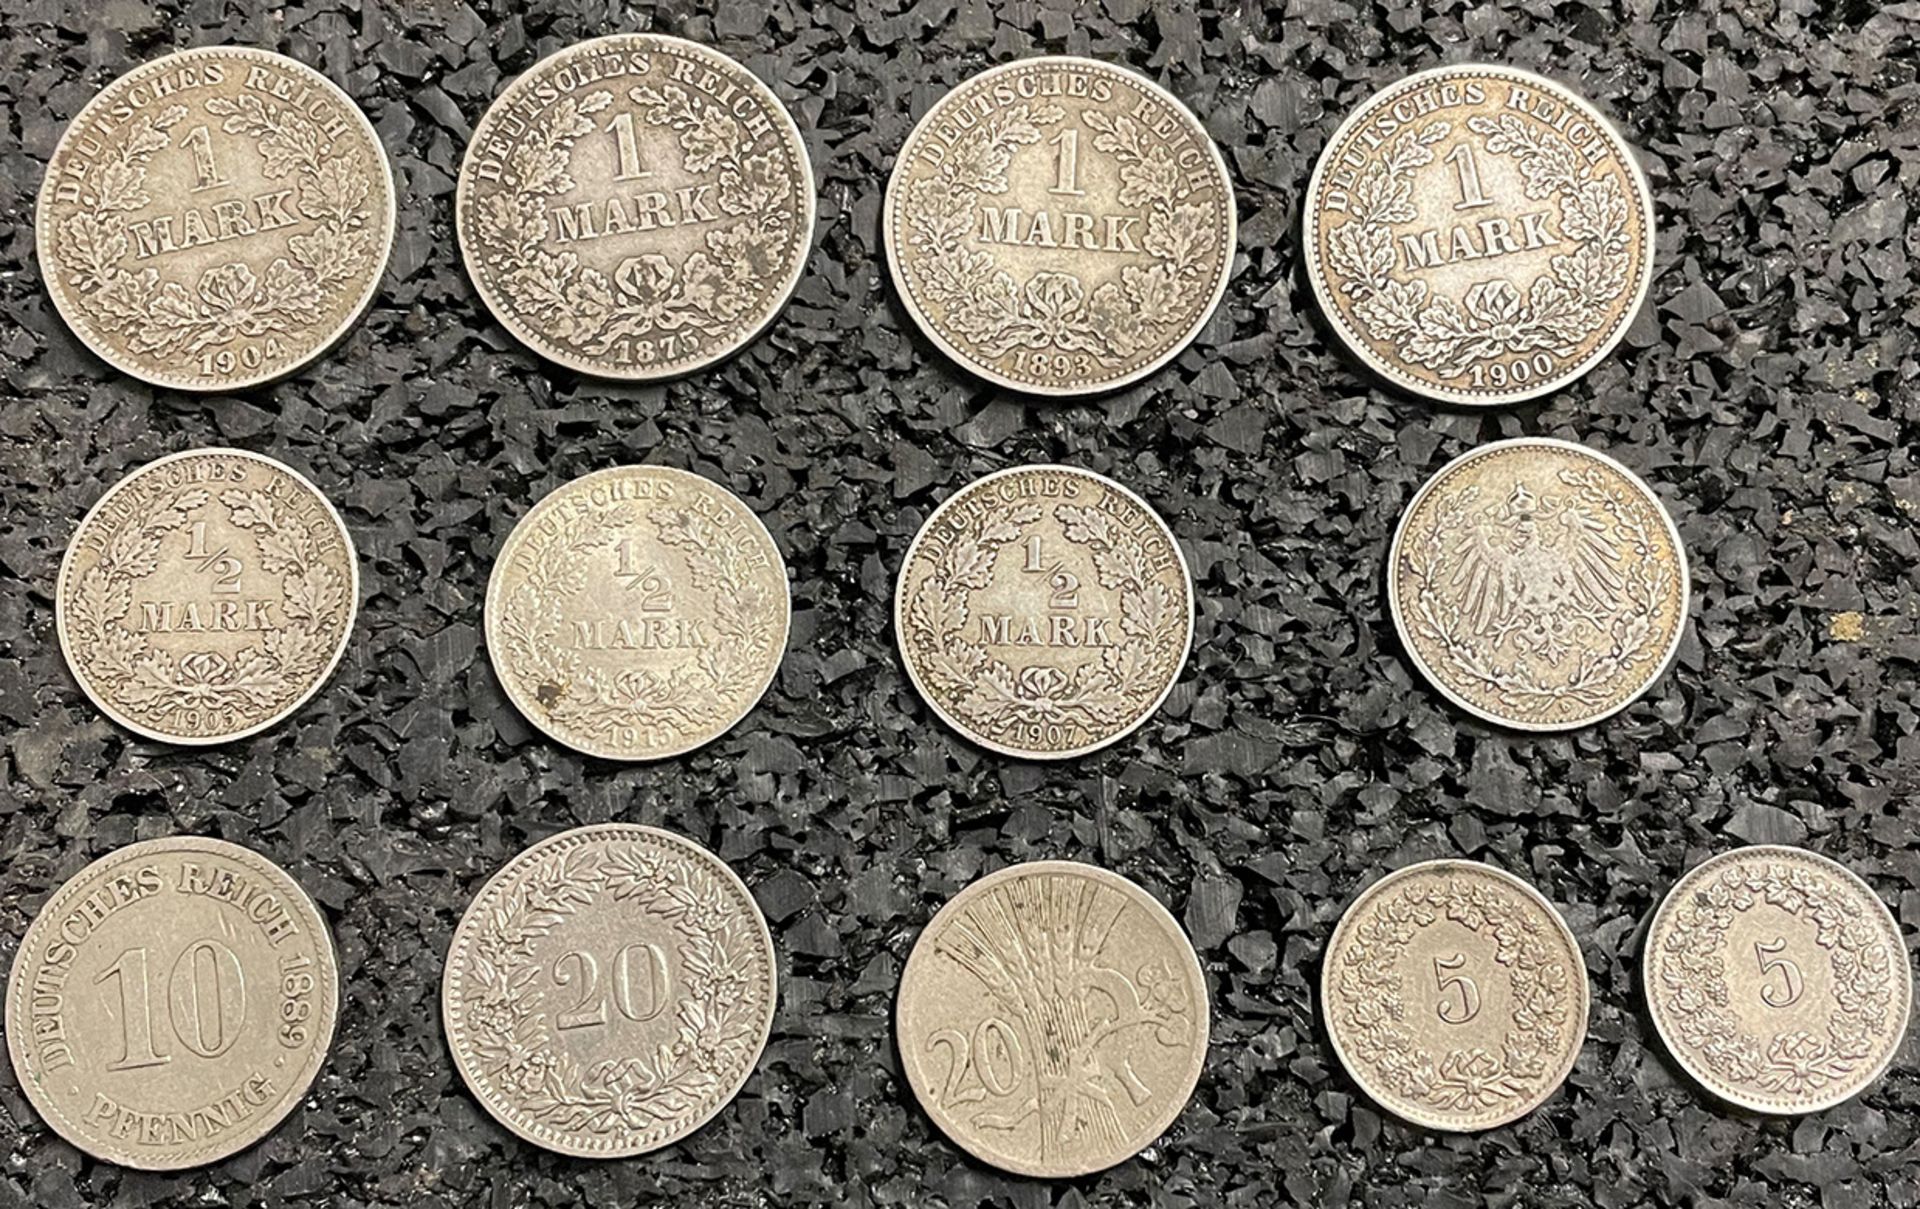 Konvolut Münzen: 4 x 1 Mark (1875, 1893, 1900, 1904); 4 x 1/2 Mark (1905, 1905, 1907, 1915); 1 x